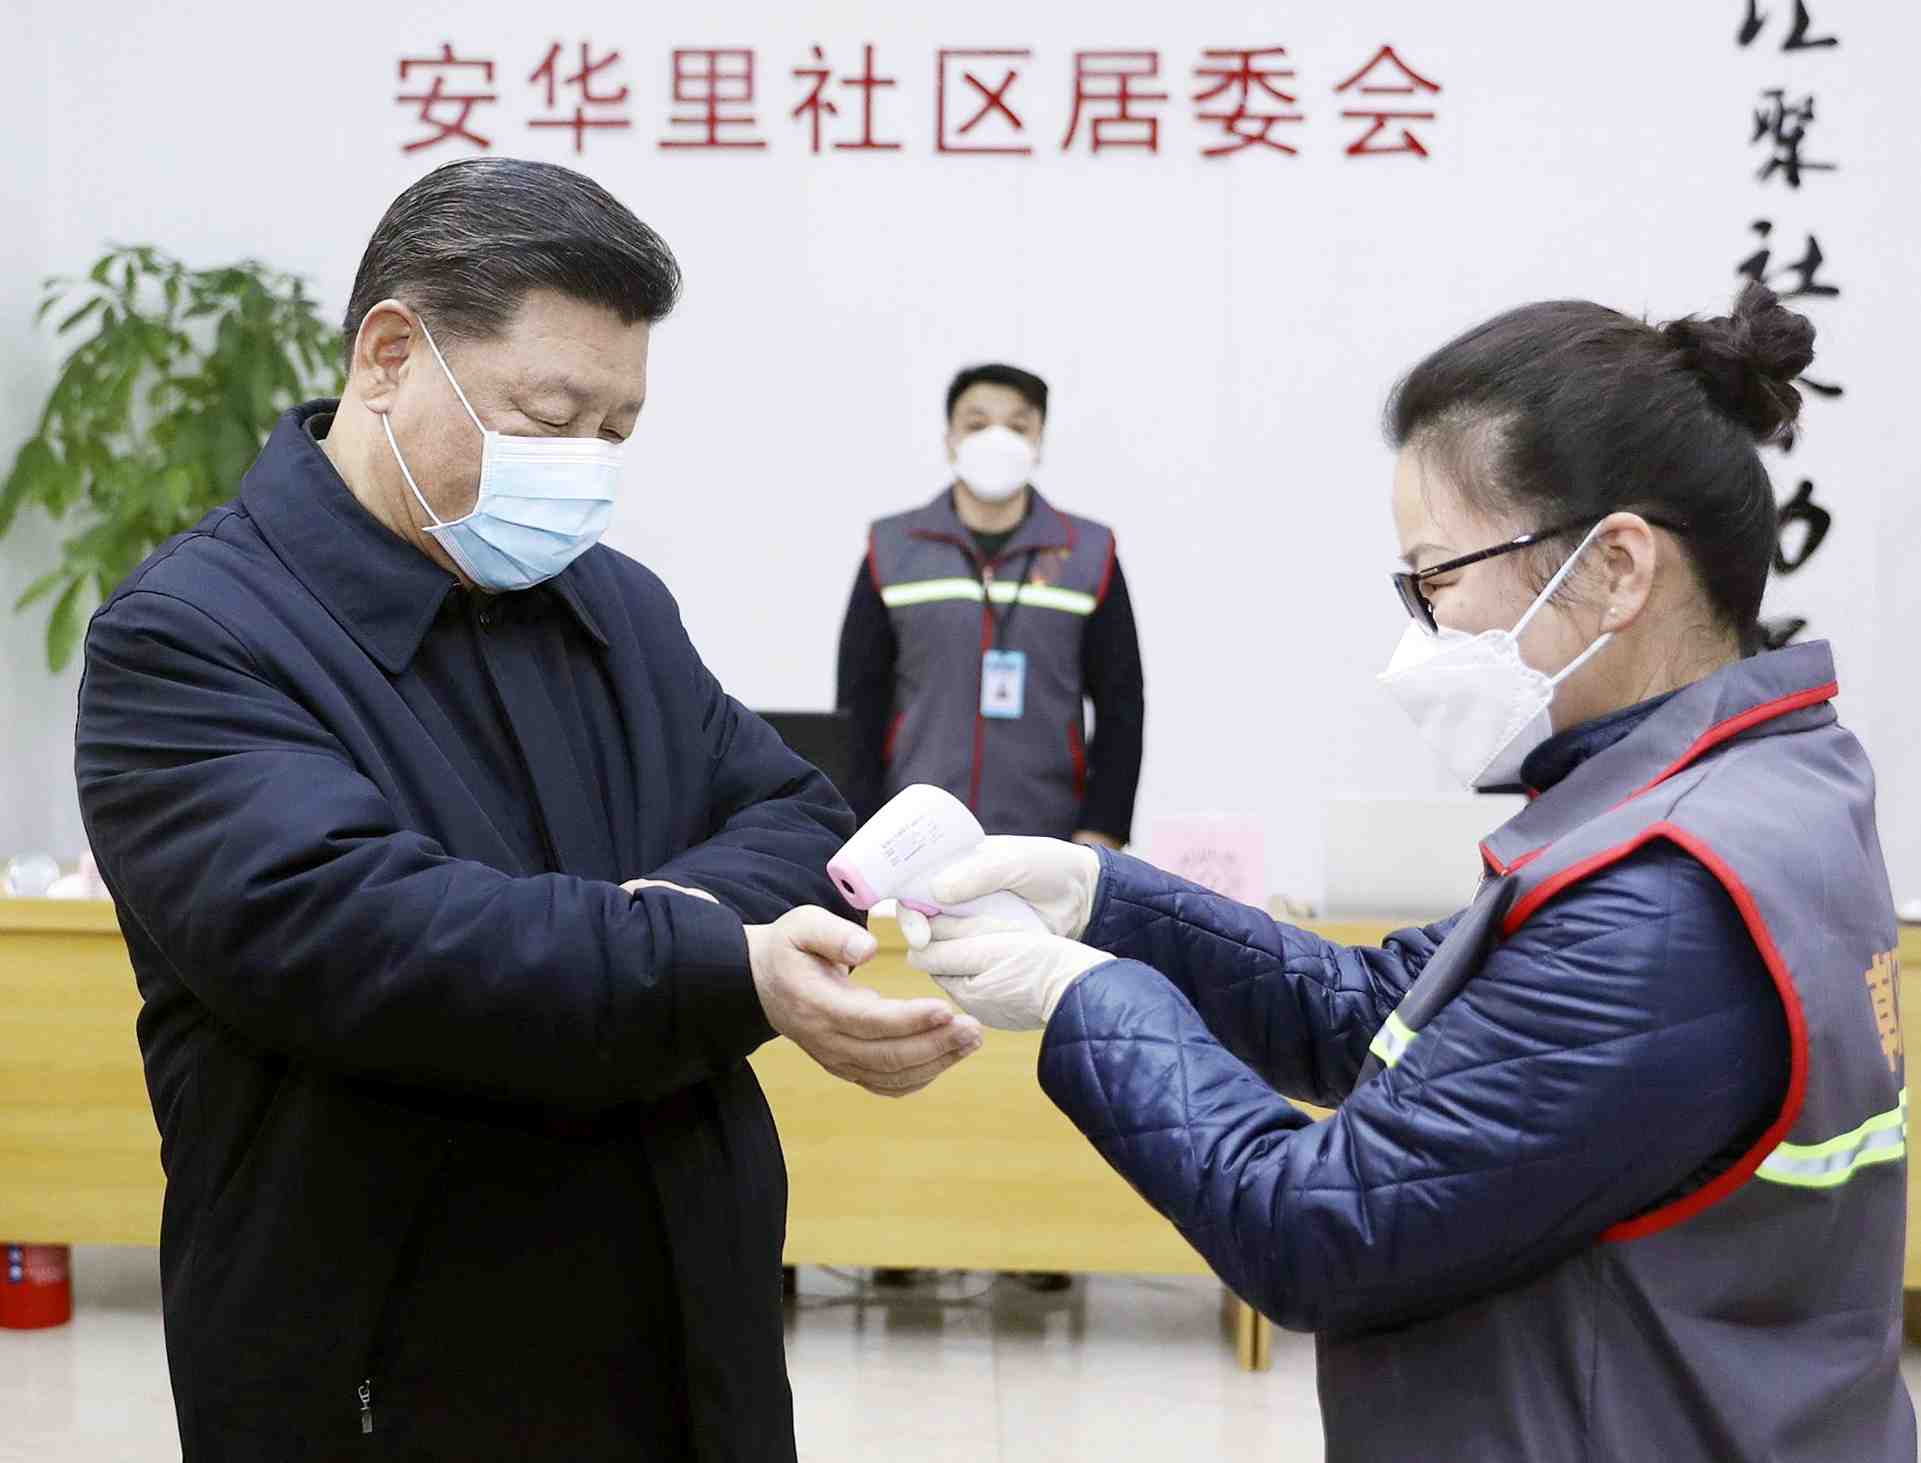 China Coronavirus and Xi Jinping Mask 005